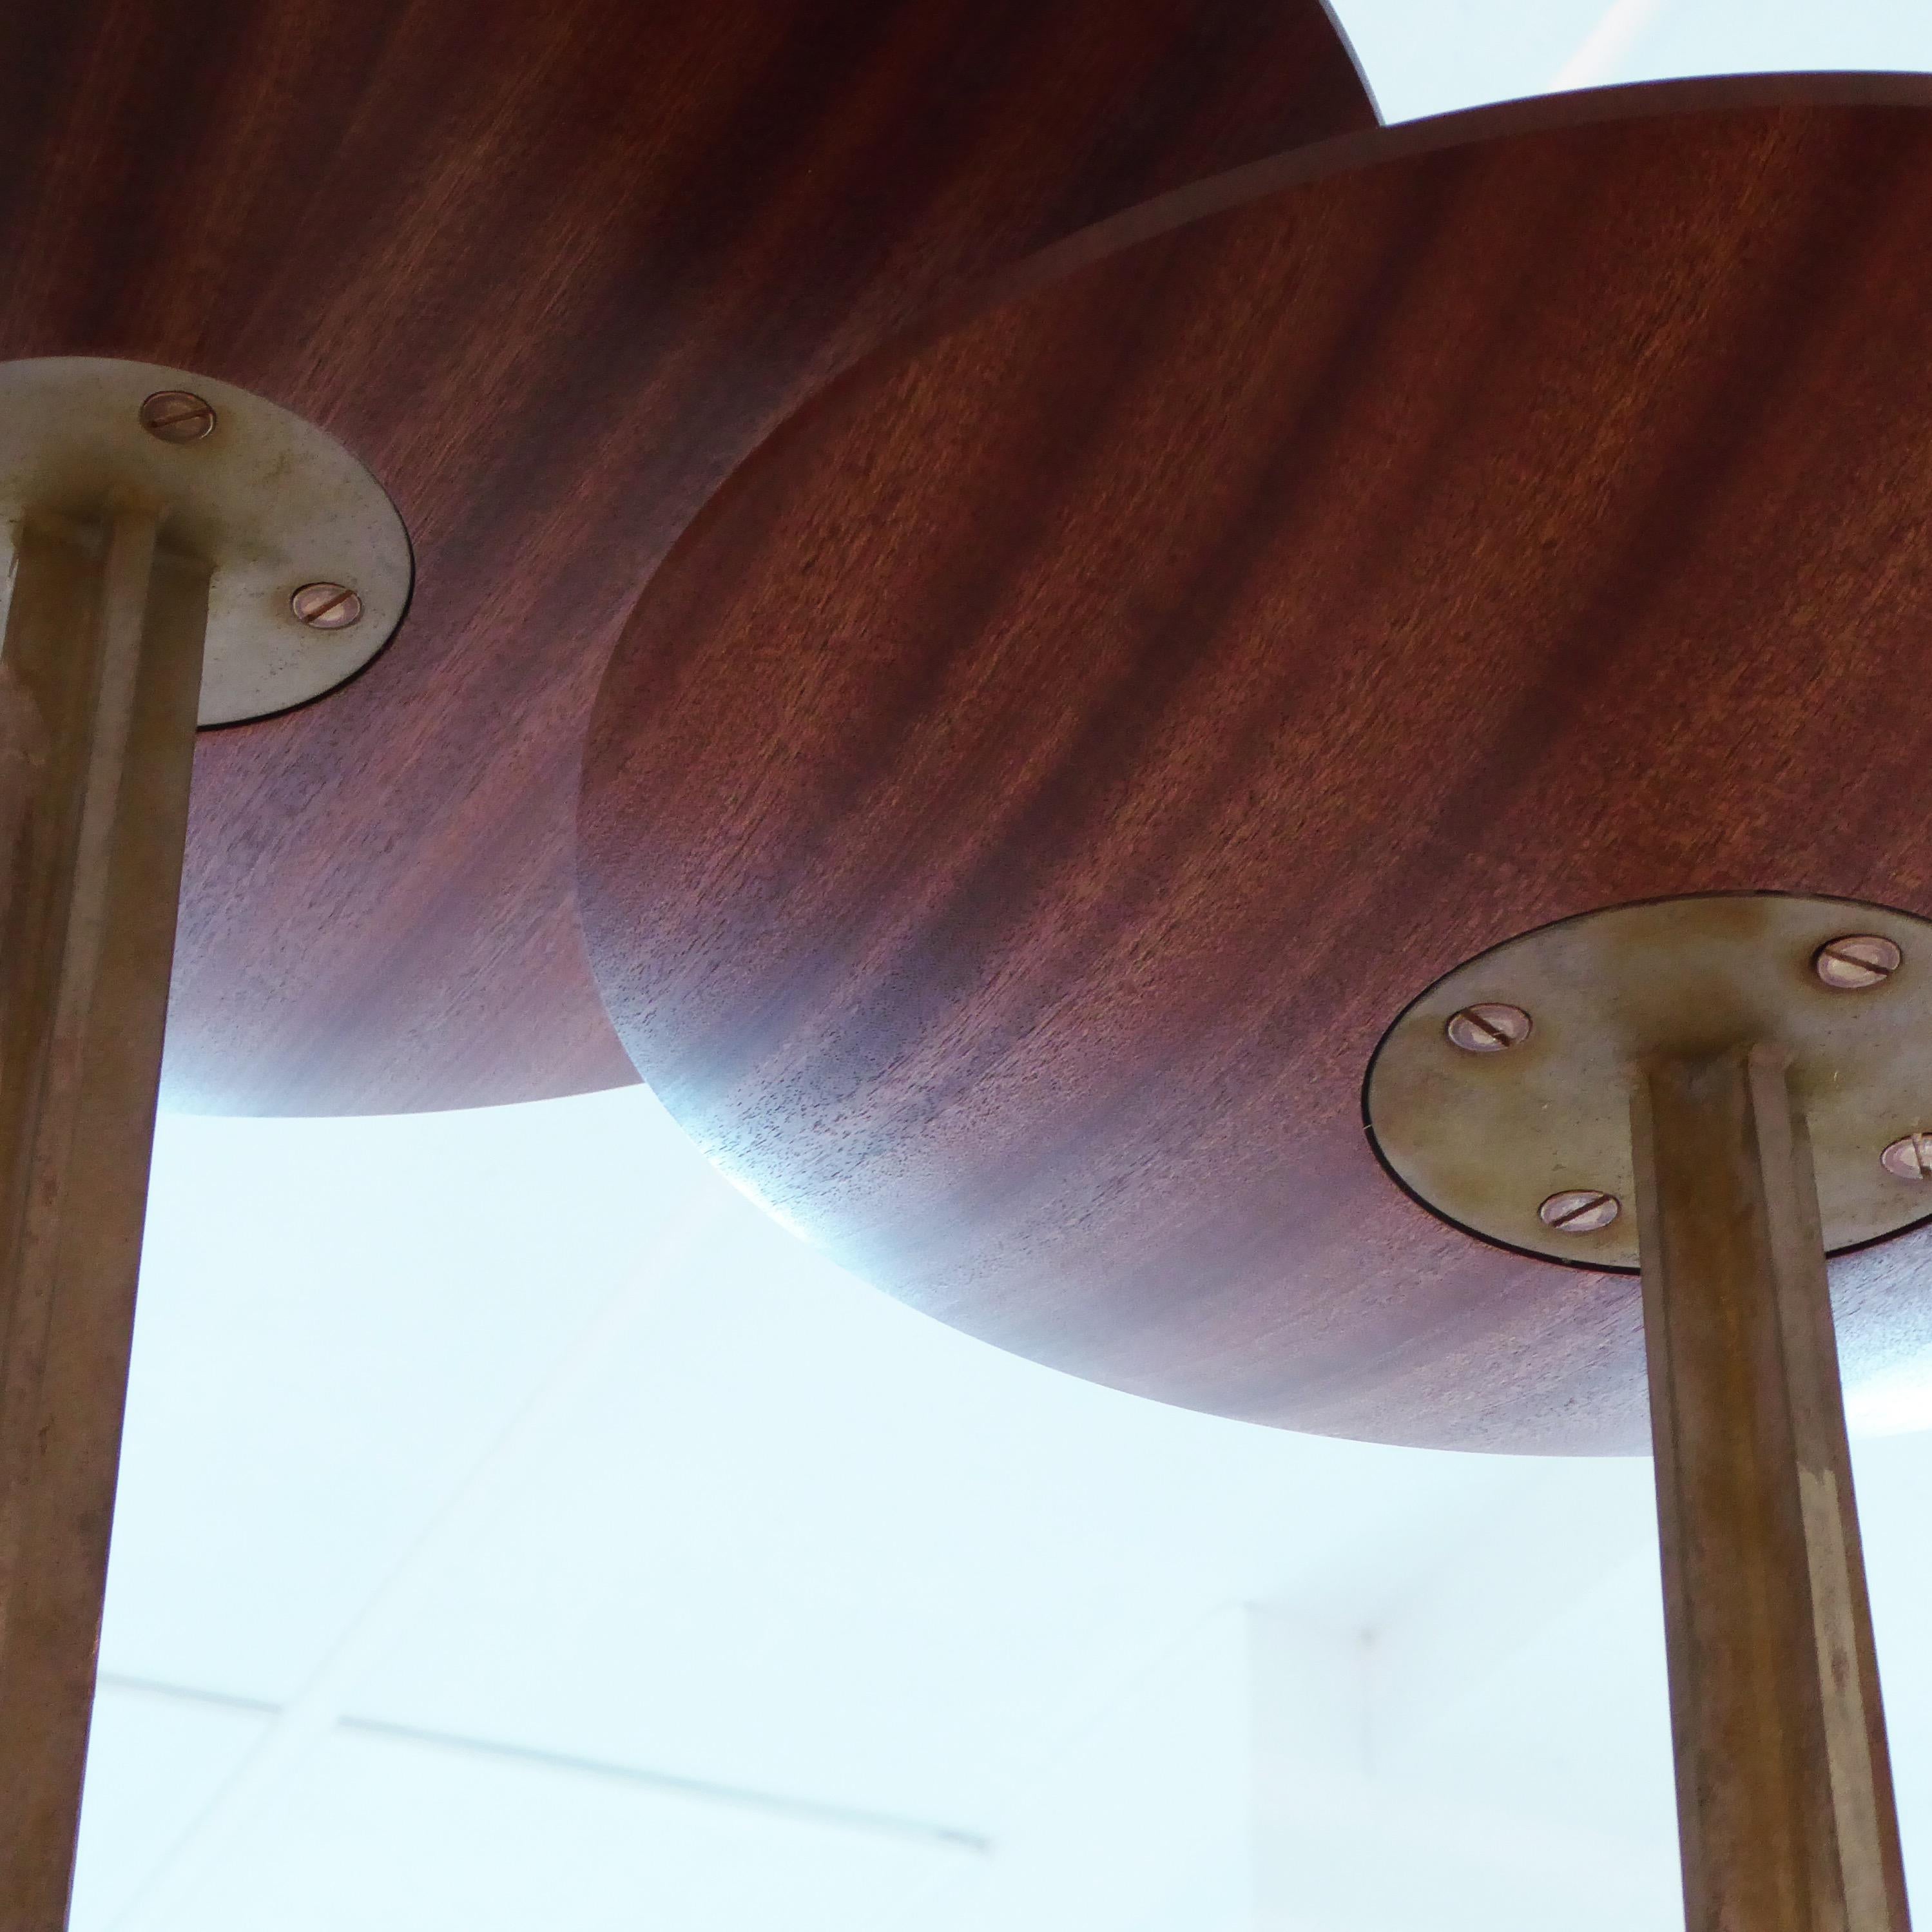 Oberflächen-Tabellen

Diese Kollektion zierlicher Tische kombiniert fein geformte Platten, sich verjüngende Stiele aus Bronzeguss und Betonsockel, um jeden Raum zu ergänzen. Die gedrechselten Holzplatten sind wunderschön geformt und poliert und